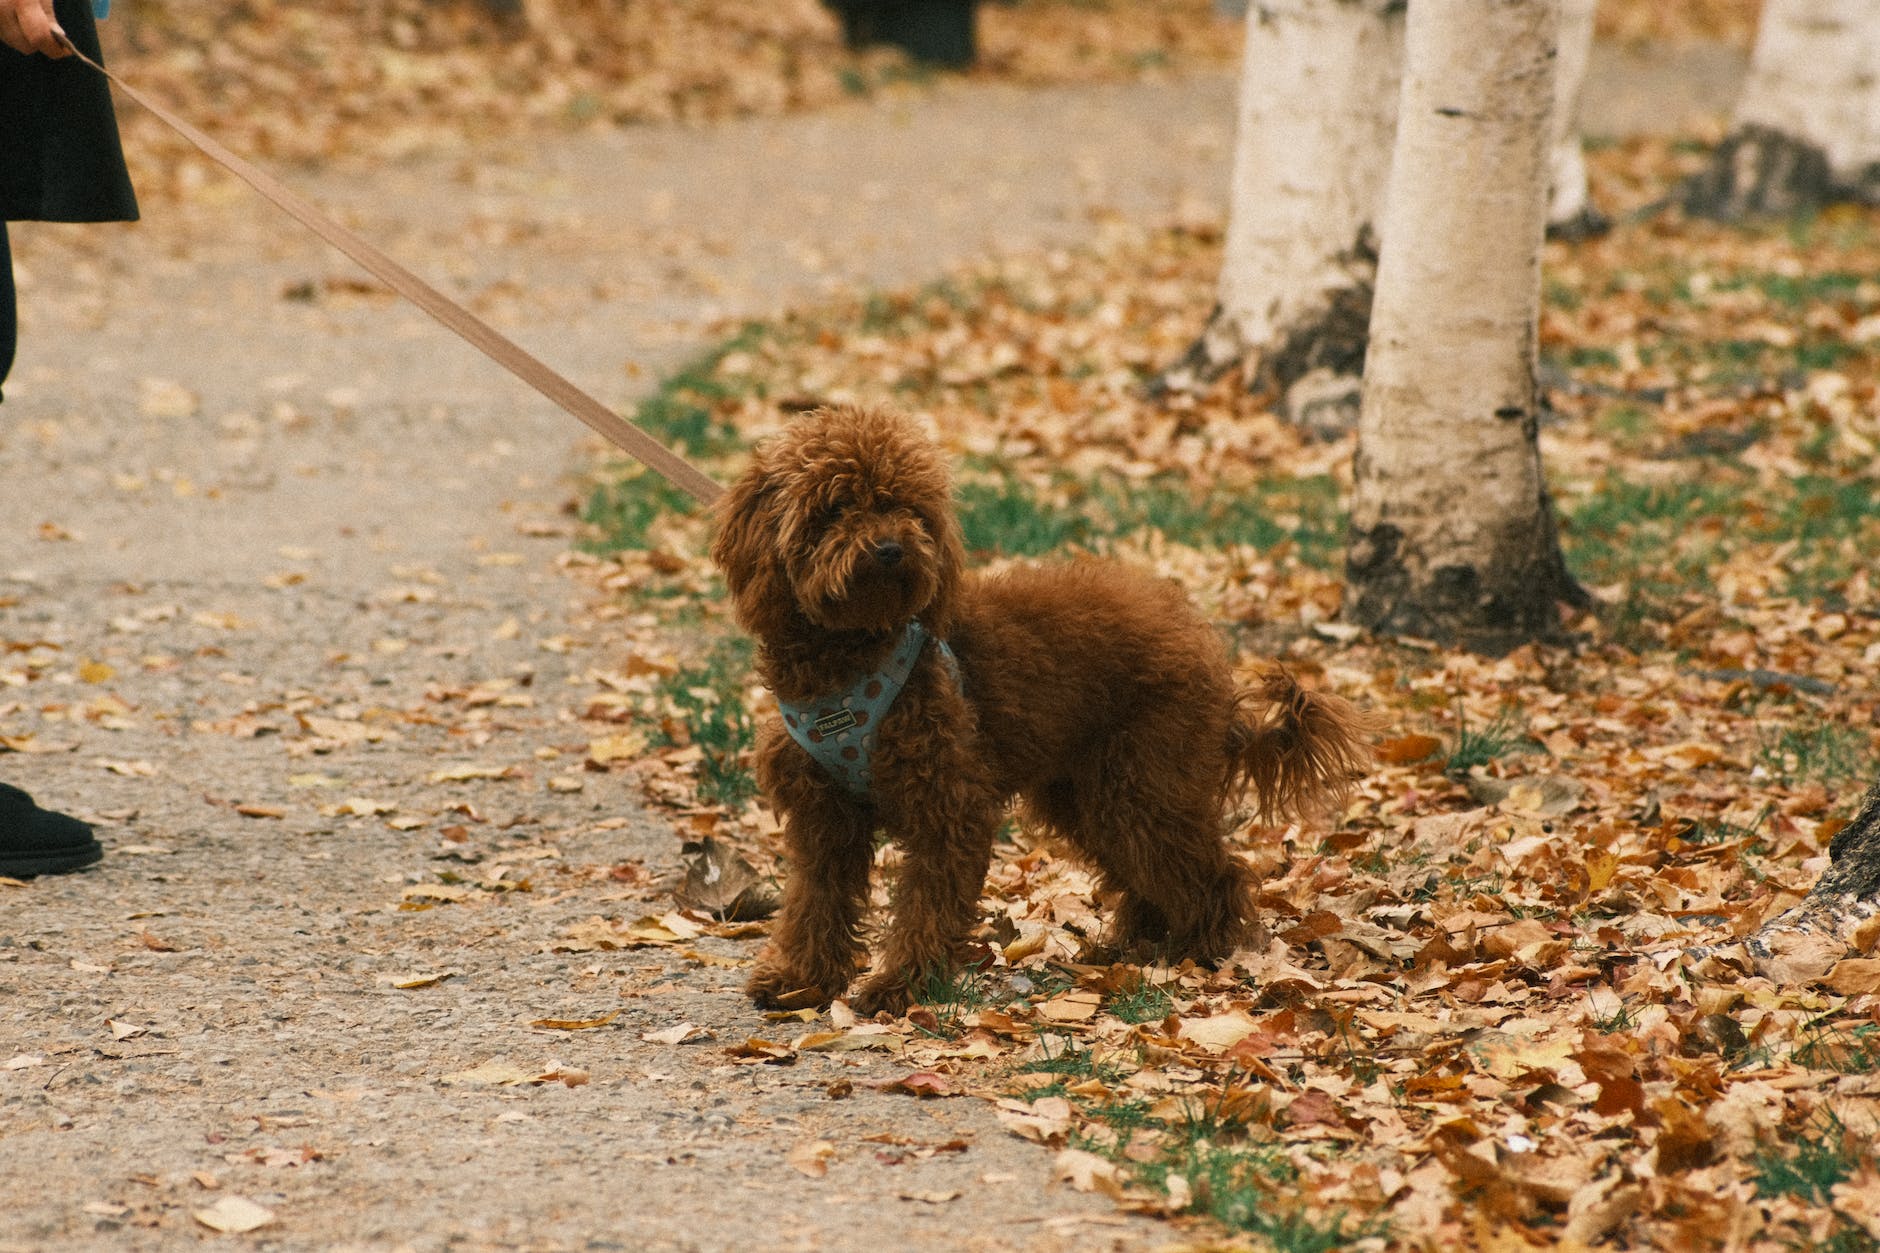 a dog on a leash